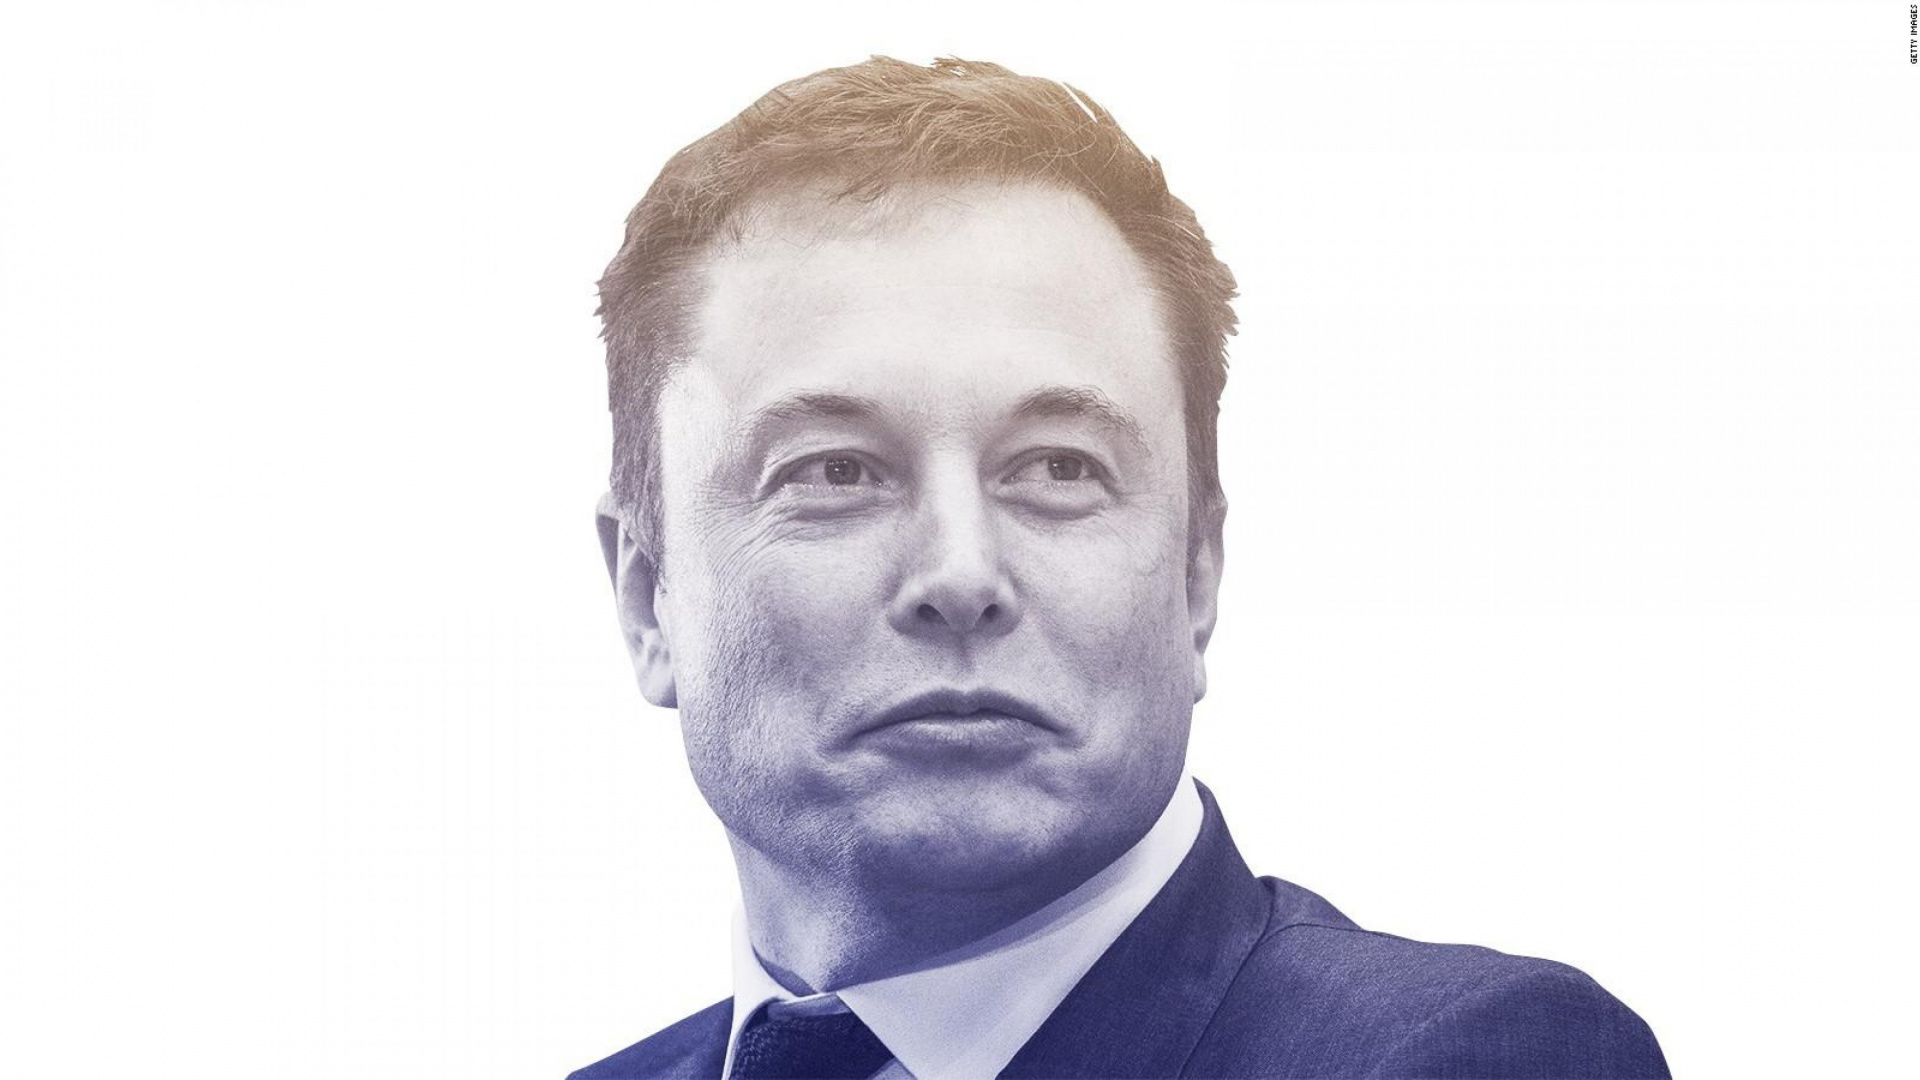 Elon Musk, Gesicht, Kopf, Kinn, Stirn. Wallpaper in 1920x1080 Resolution